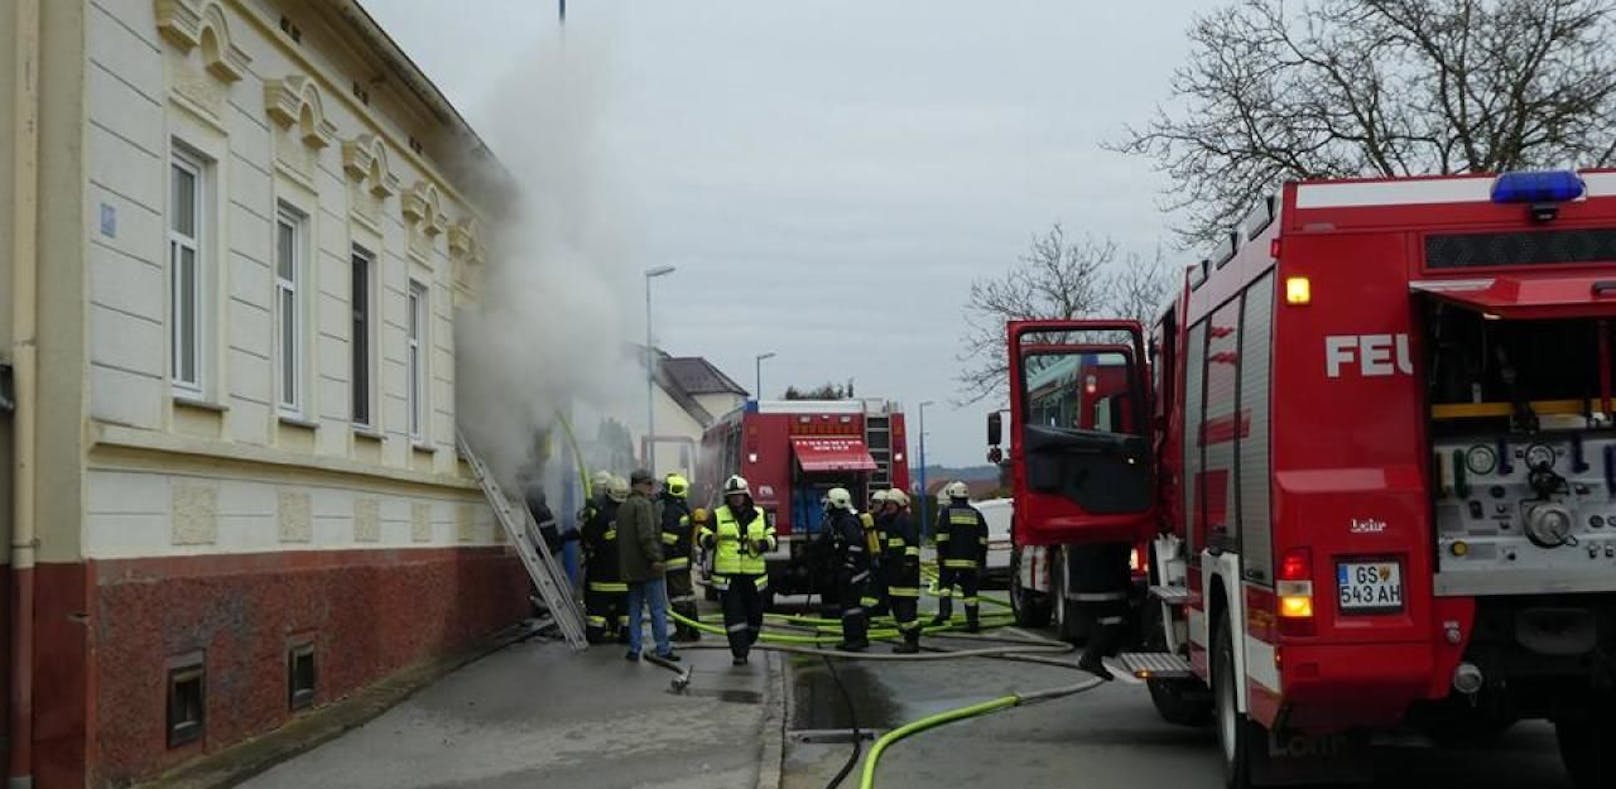 Bei einem Wohnhausbrand in Stegersbach ist eine Frau ums Leben gekommen, drei weitere wurden verletzt.